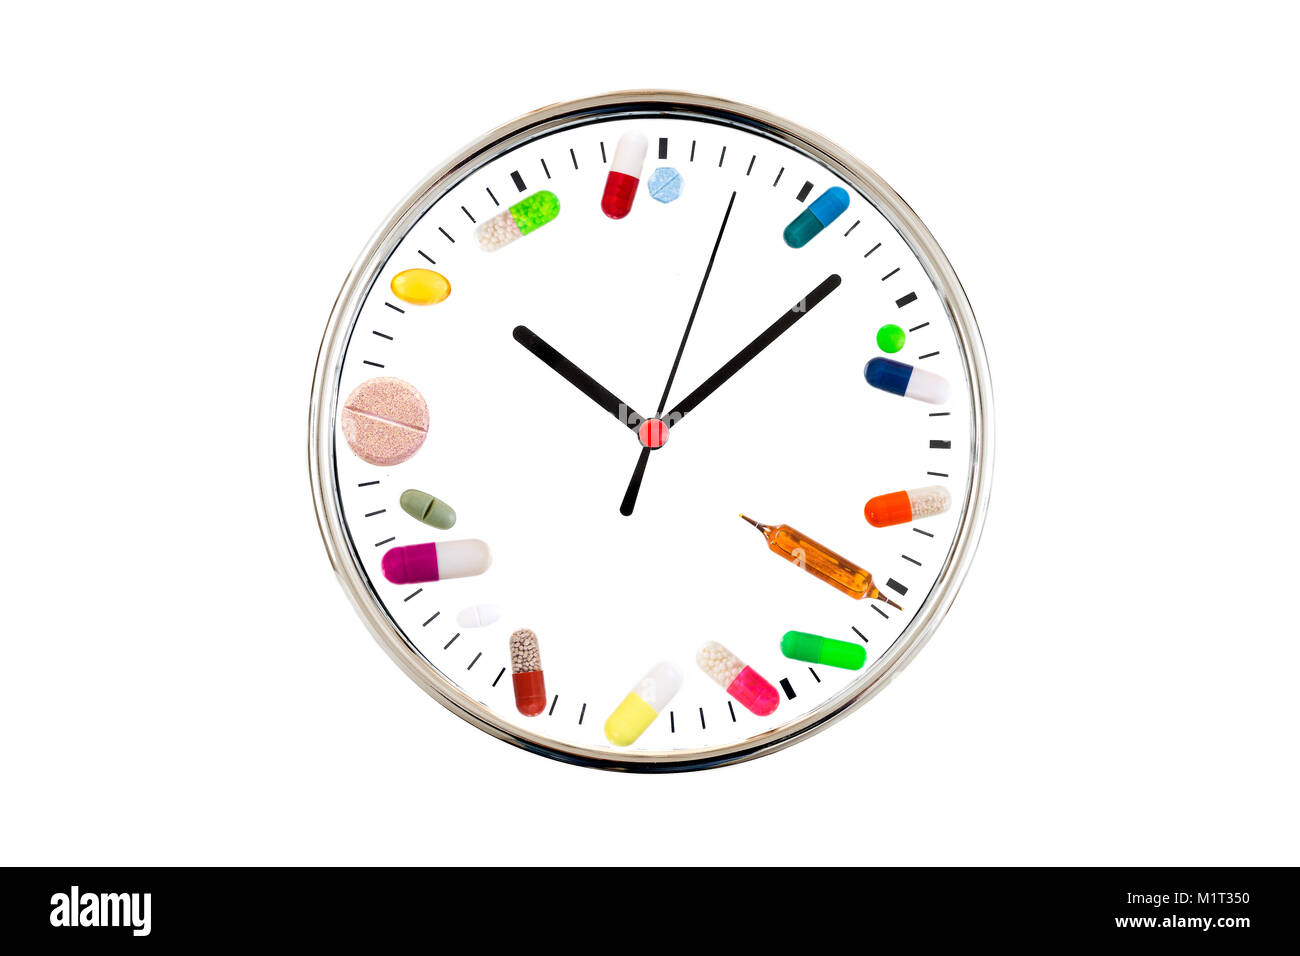 Concept de prendre des médicaments à temps . Horloge analogique avec un cadran fabriqué à partir de différents comprimés, capsules, comprimés, ampoules et médicinales sur fond blanc Banque D'Images